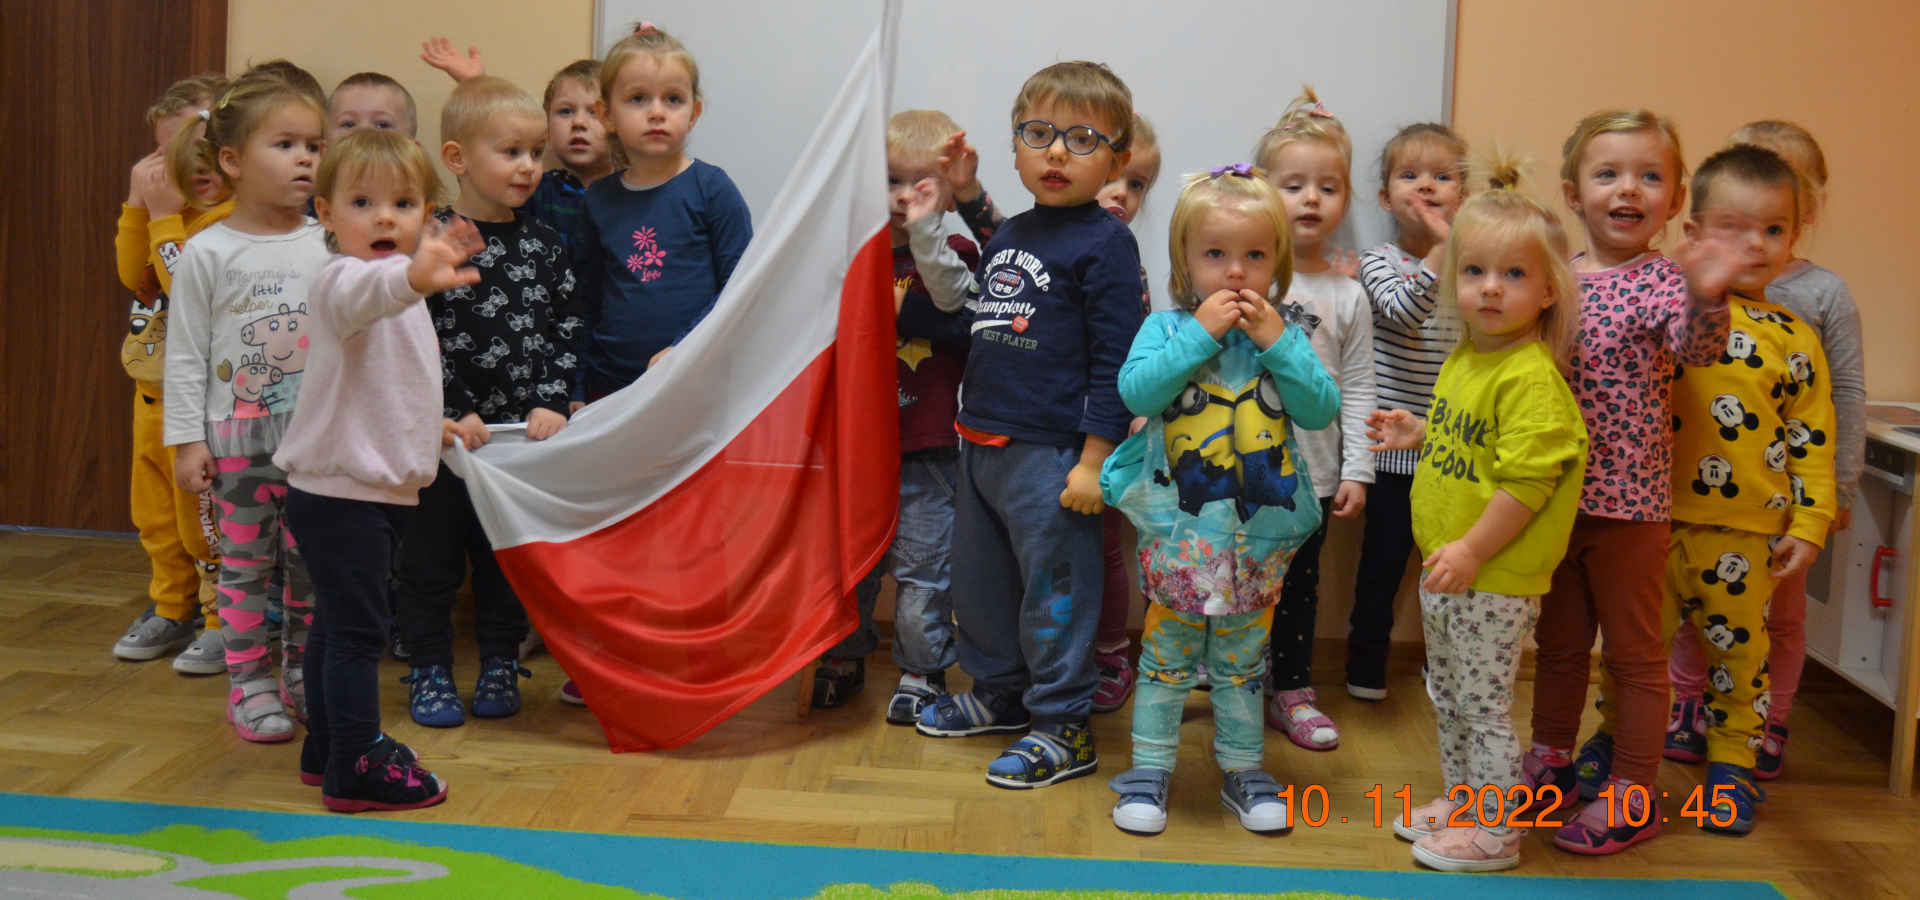 Zdjęcie grupowe dzieci z polską flagą